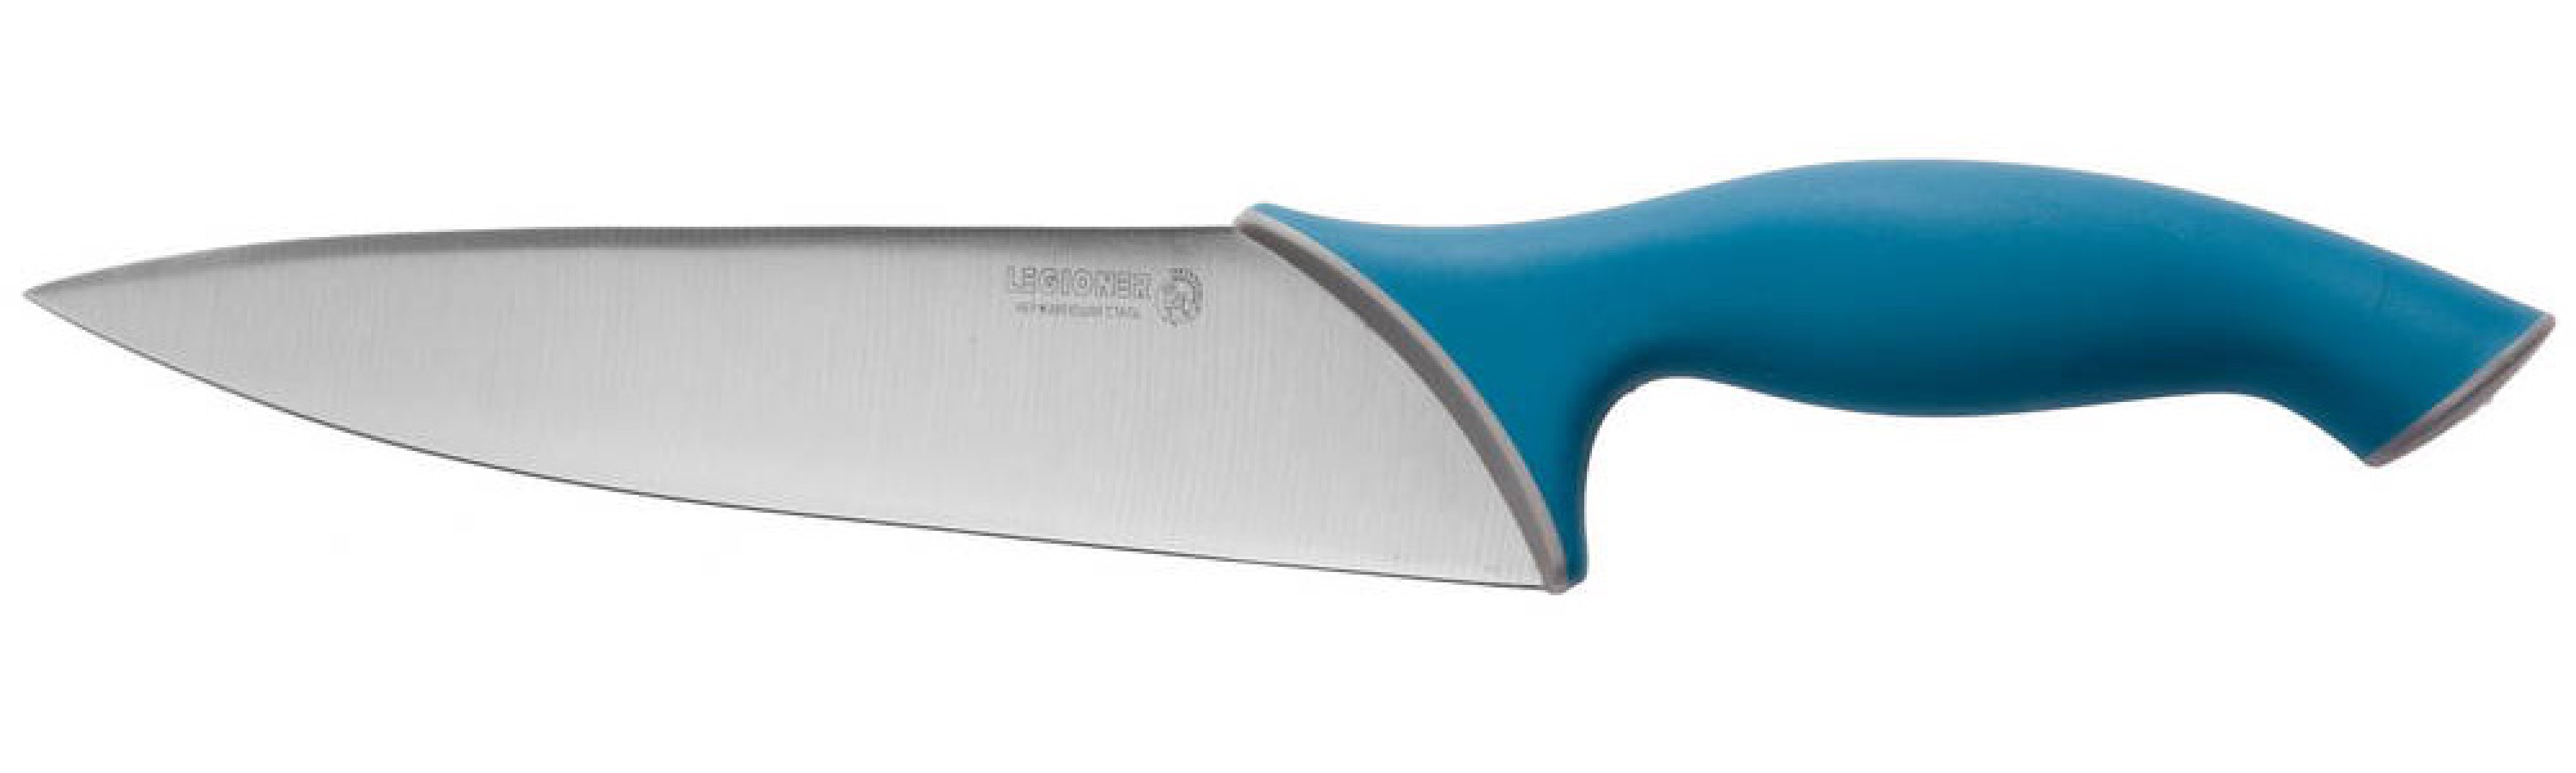 Нож шеф-повара LEGIONER Italica 200 мм нержавеющее лезвие эргономичная рукоятка (47961)